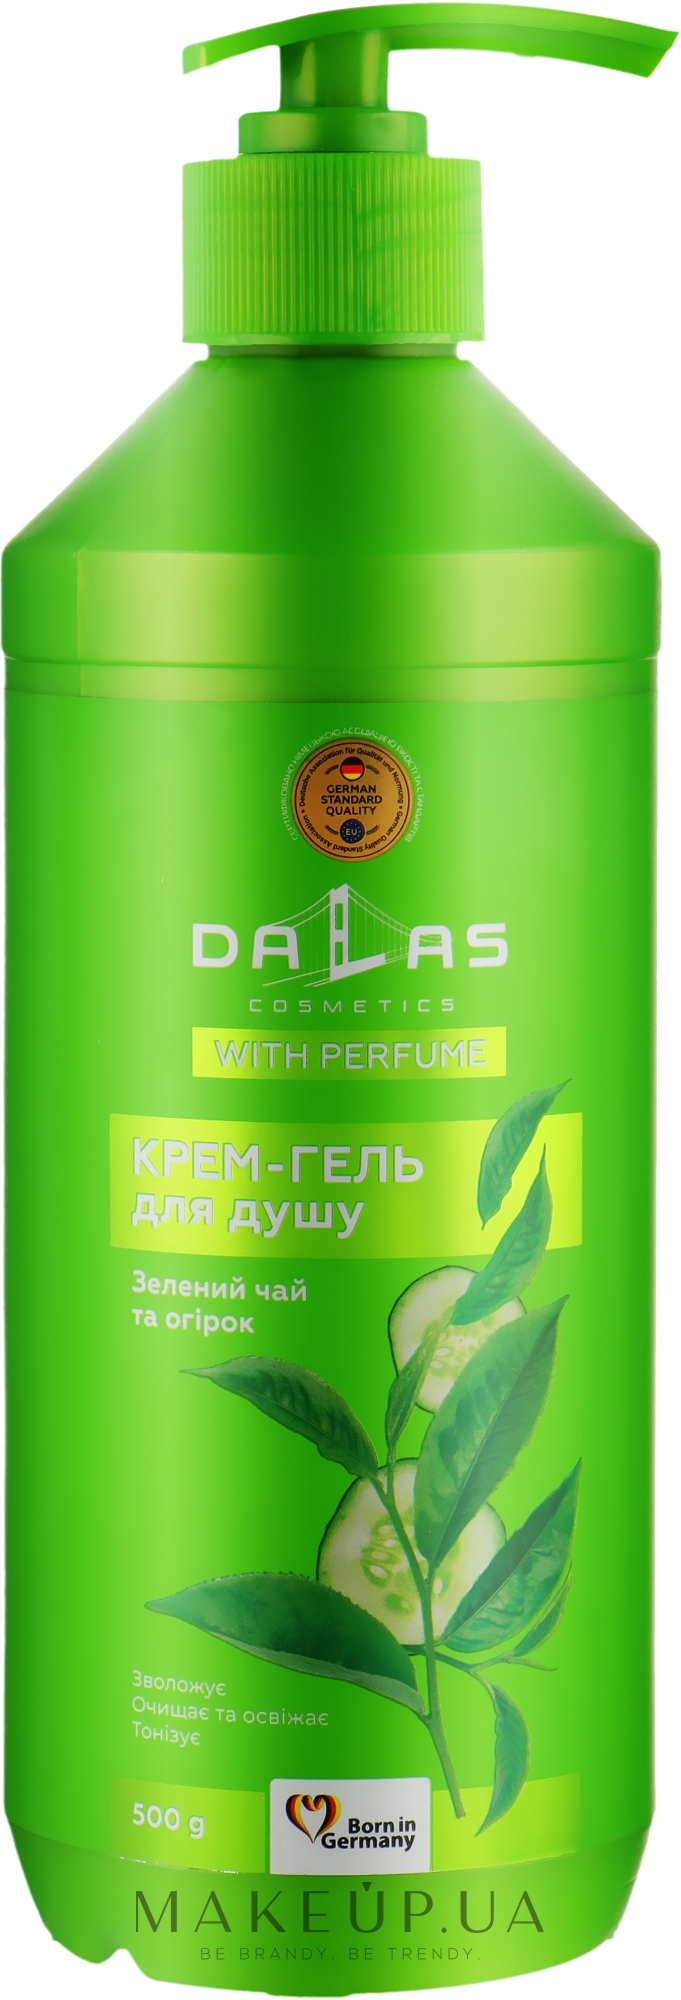 Крем-гель для душа "Зеленый чай и огурец" - Dalas Cosmetics  — фото 500g